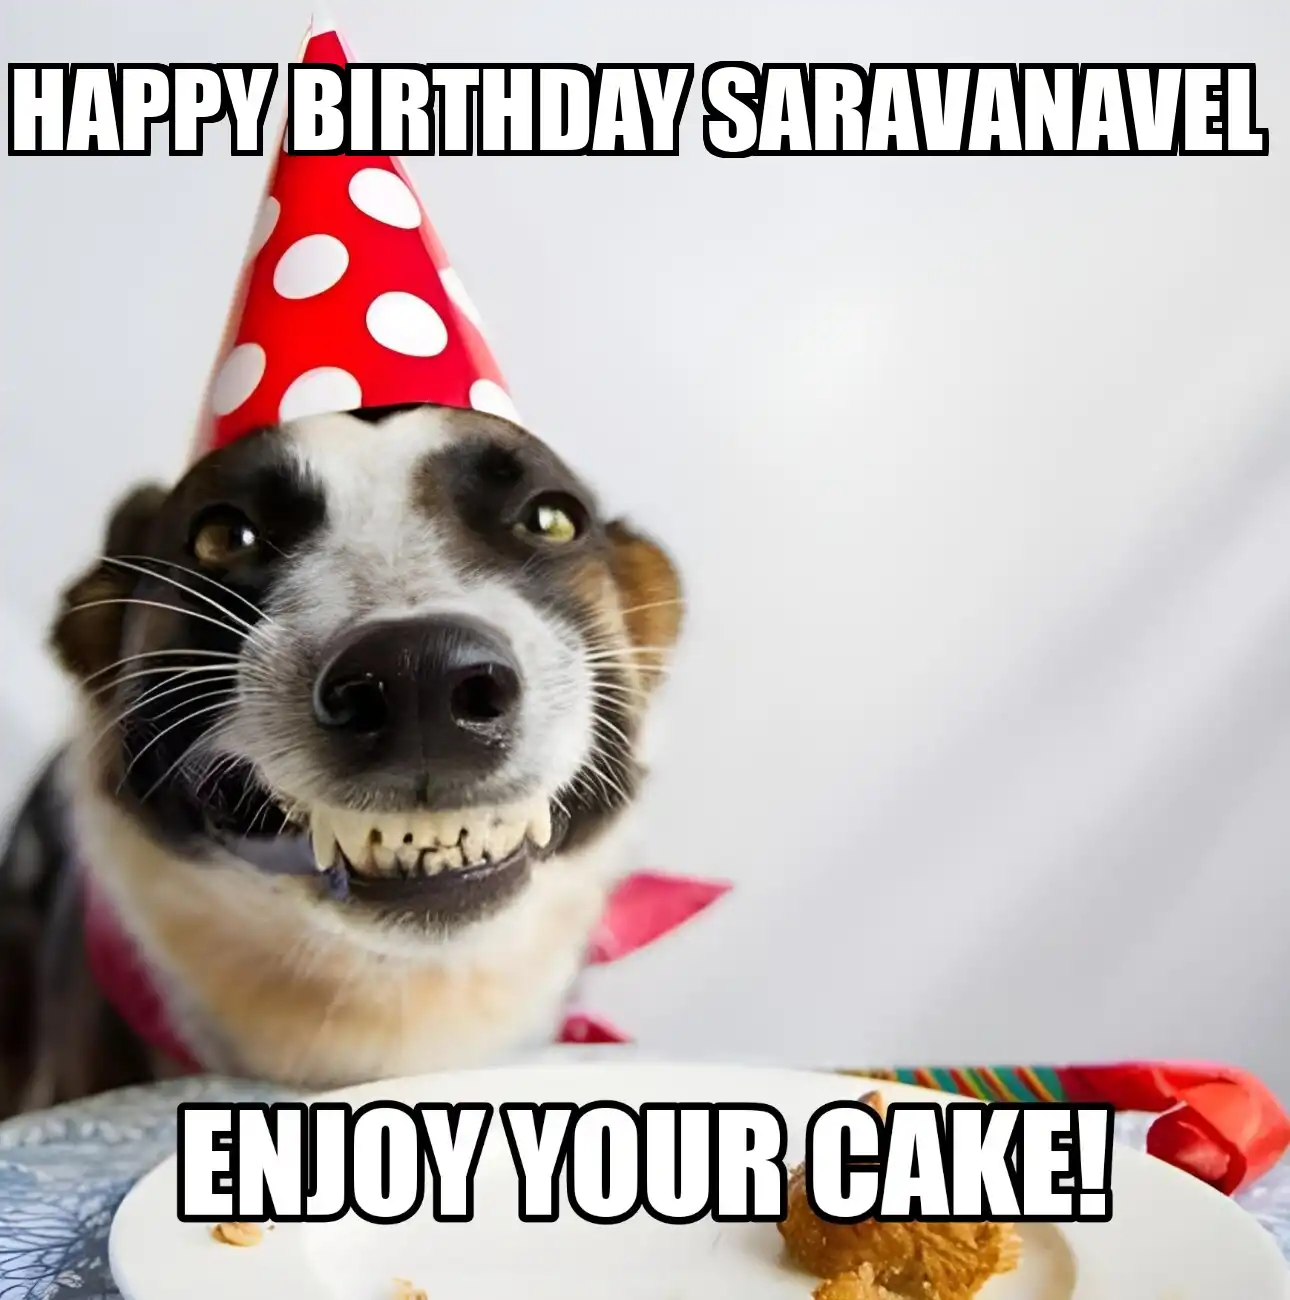 Happy Birthday Saravanavel Enjoy Your Cake Dog Meme